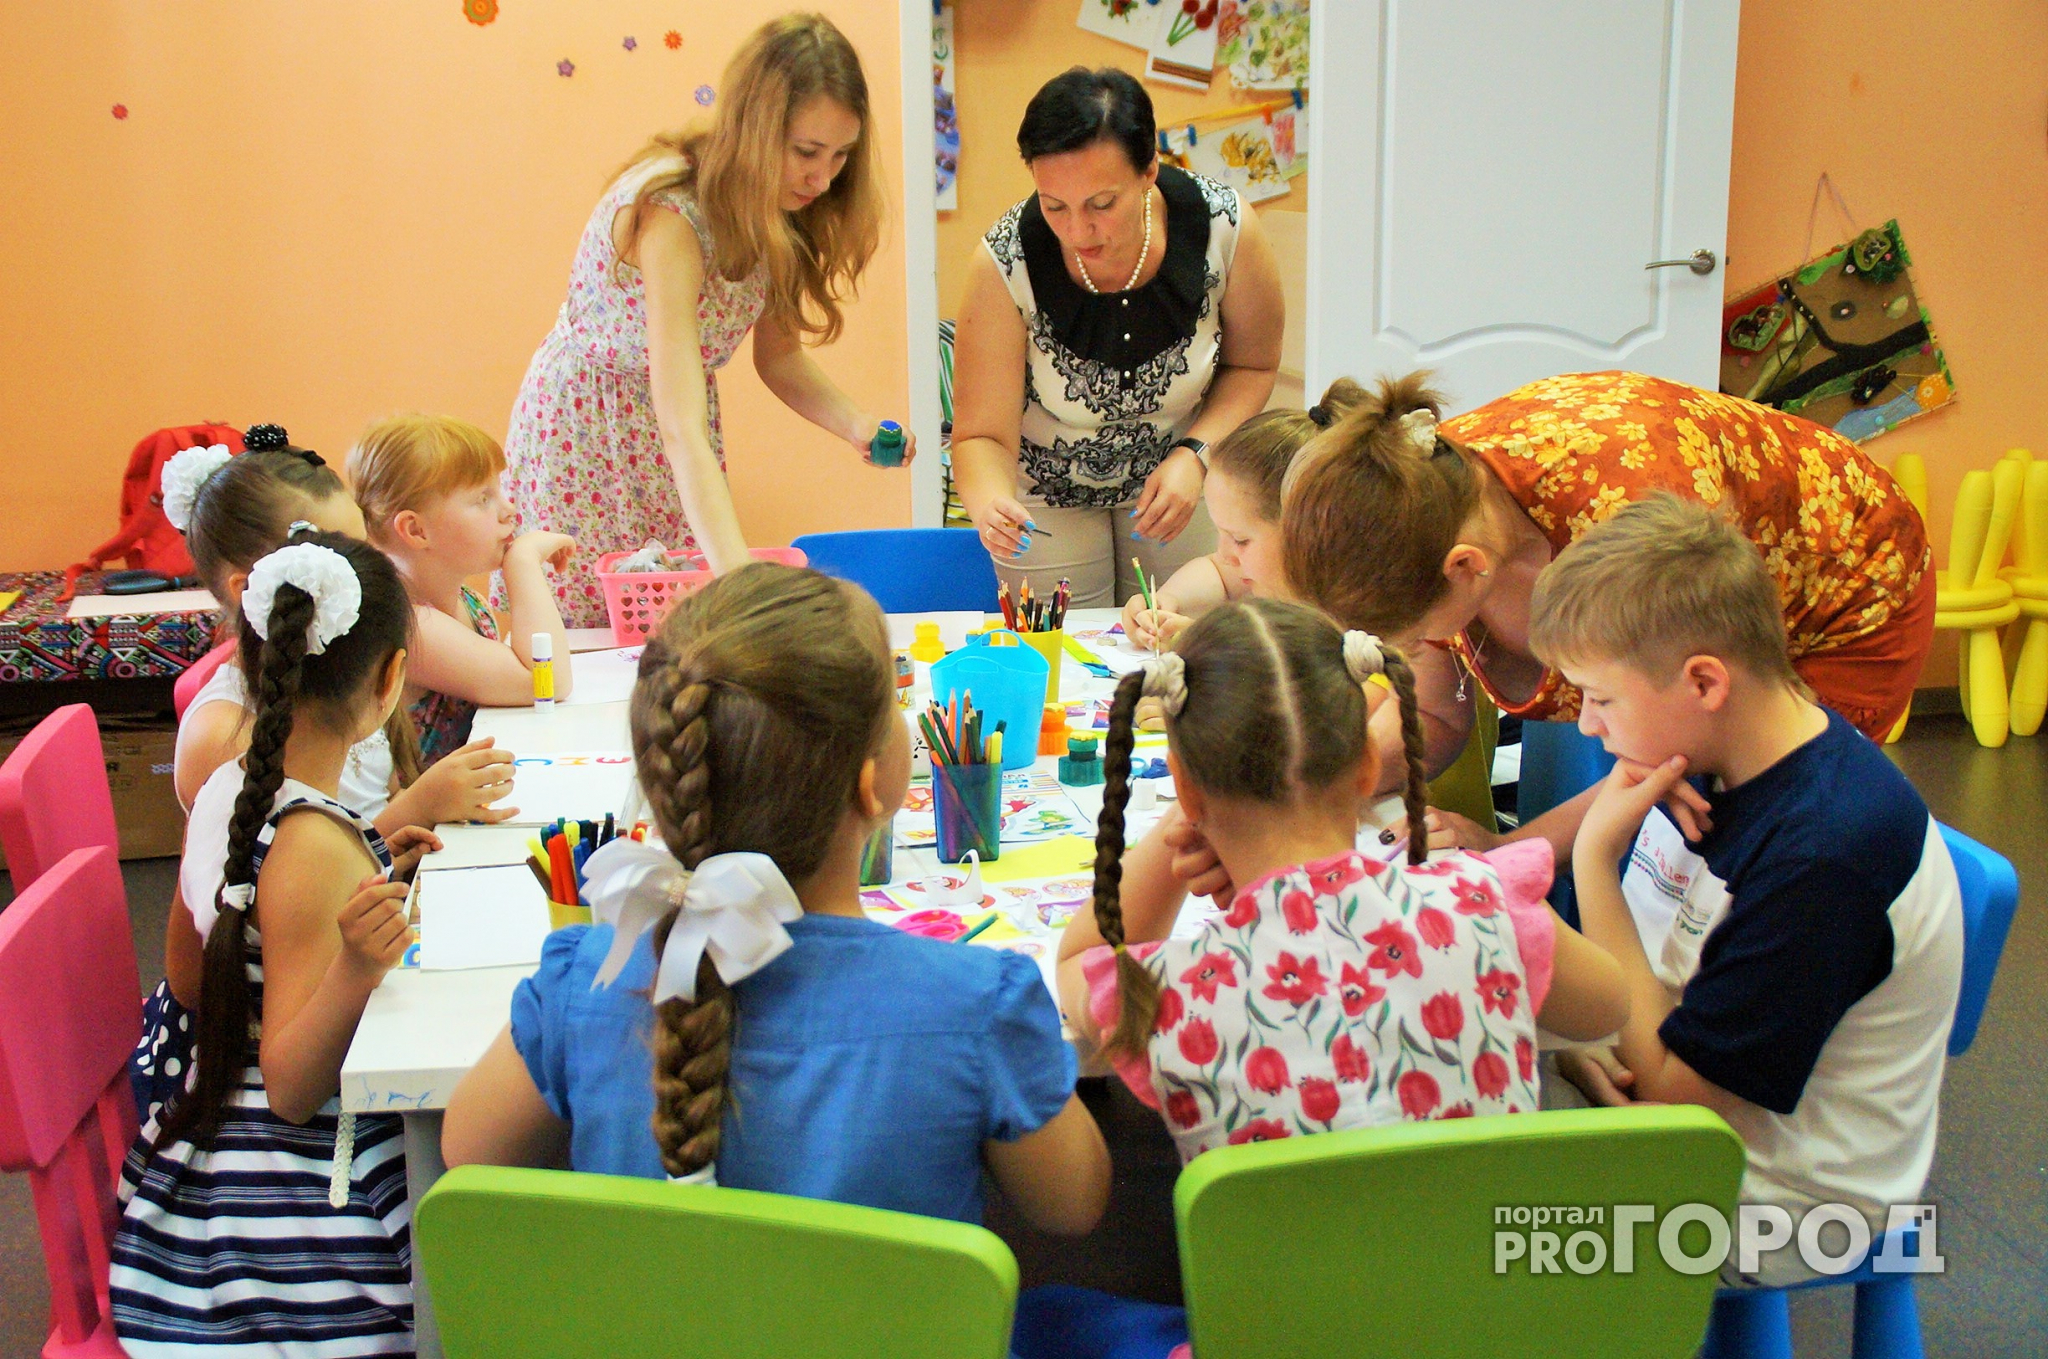 Новости России: в детсаду на ребенка уронили кастрюлю с горячим супом‍